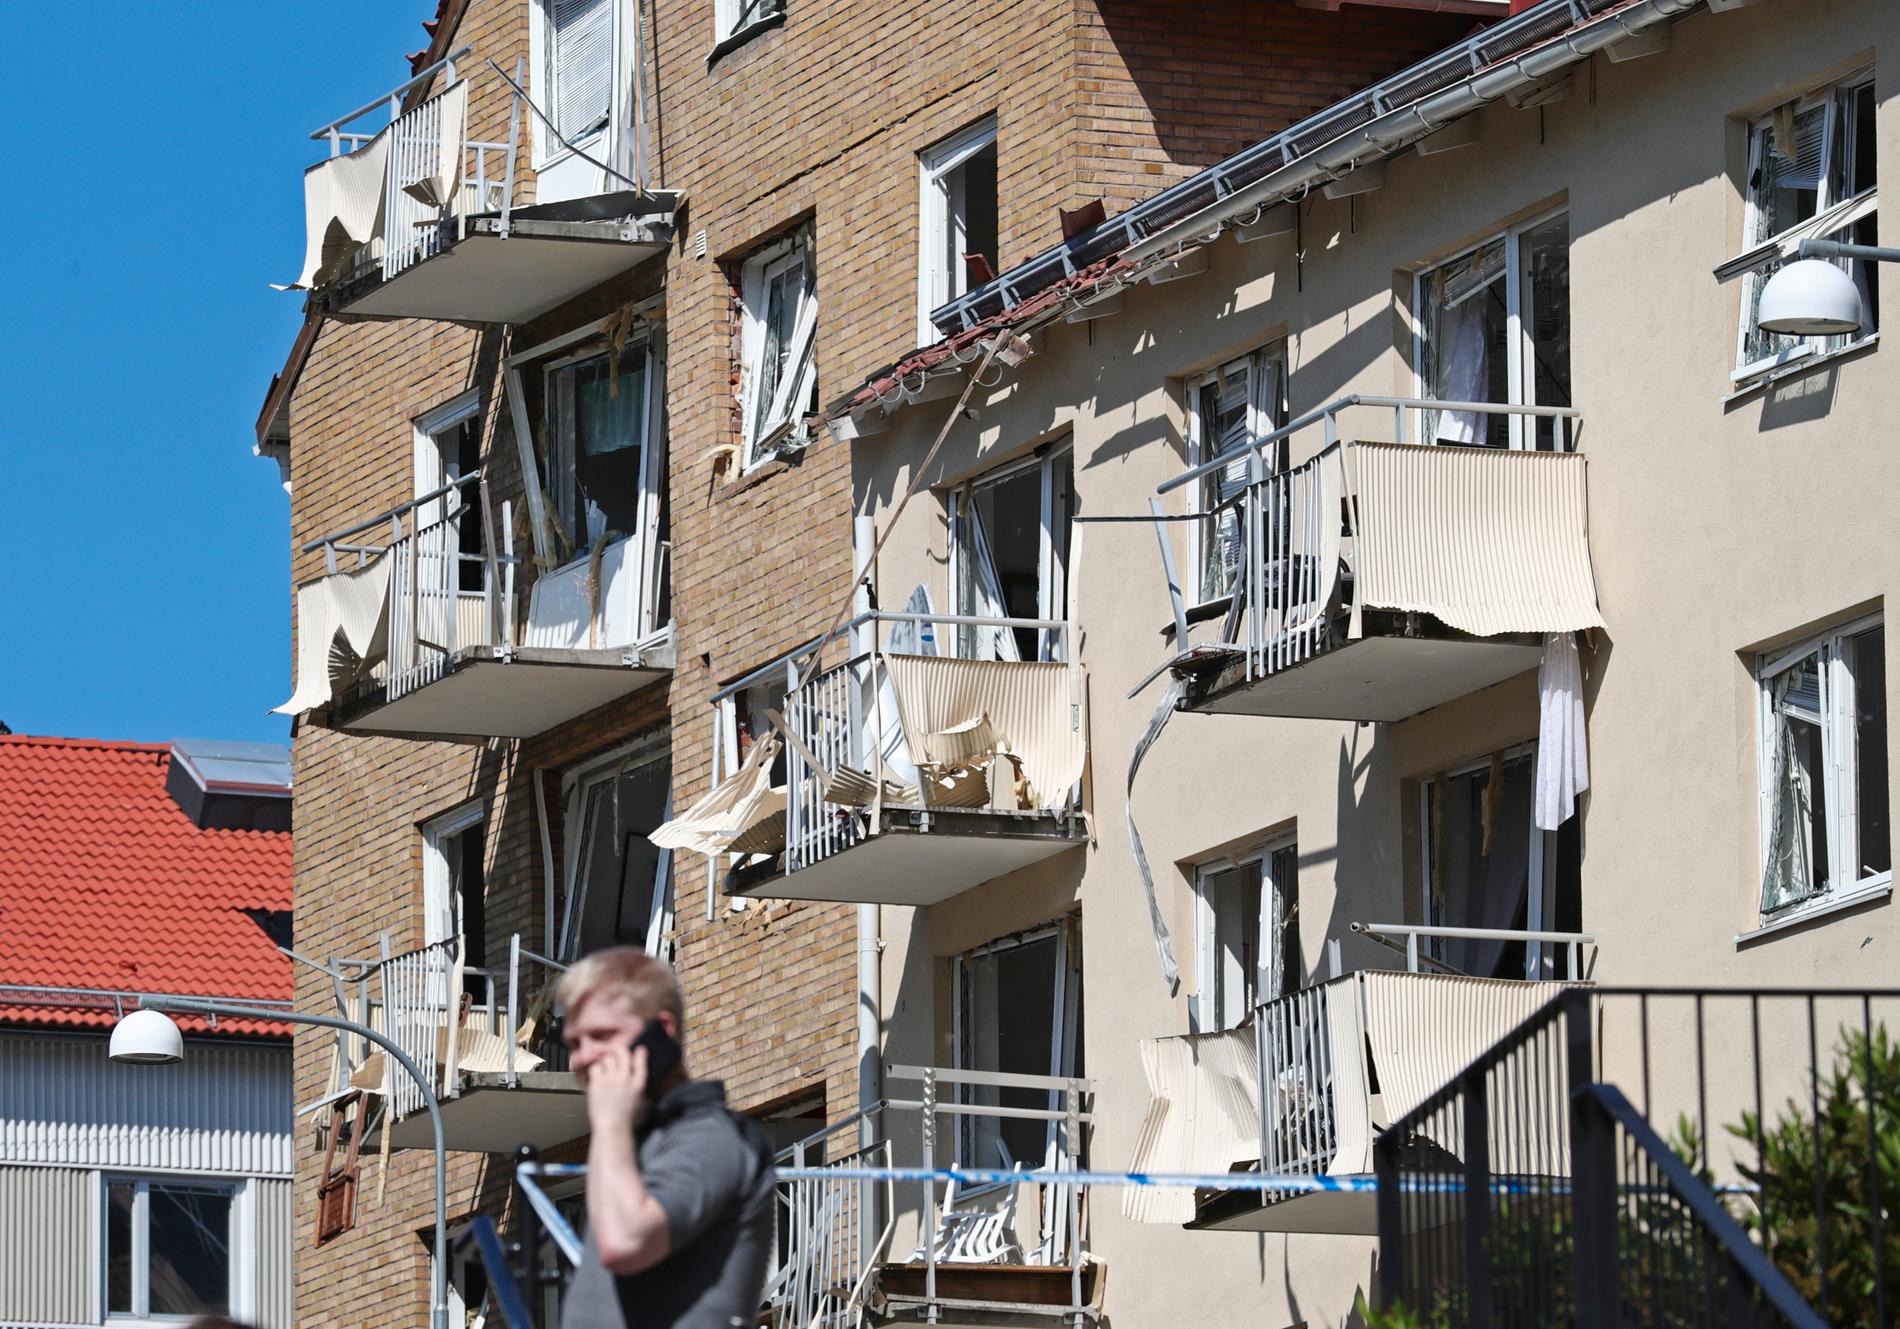 25 personer skadades lindrigt i explosionen i Linköping tidigare i år som krossade ett stort antal balkonger, fönster och lägenheter. Arkivbild.